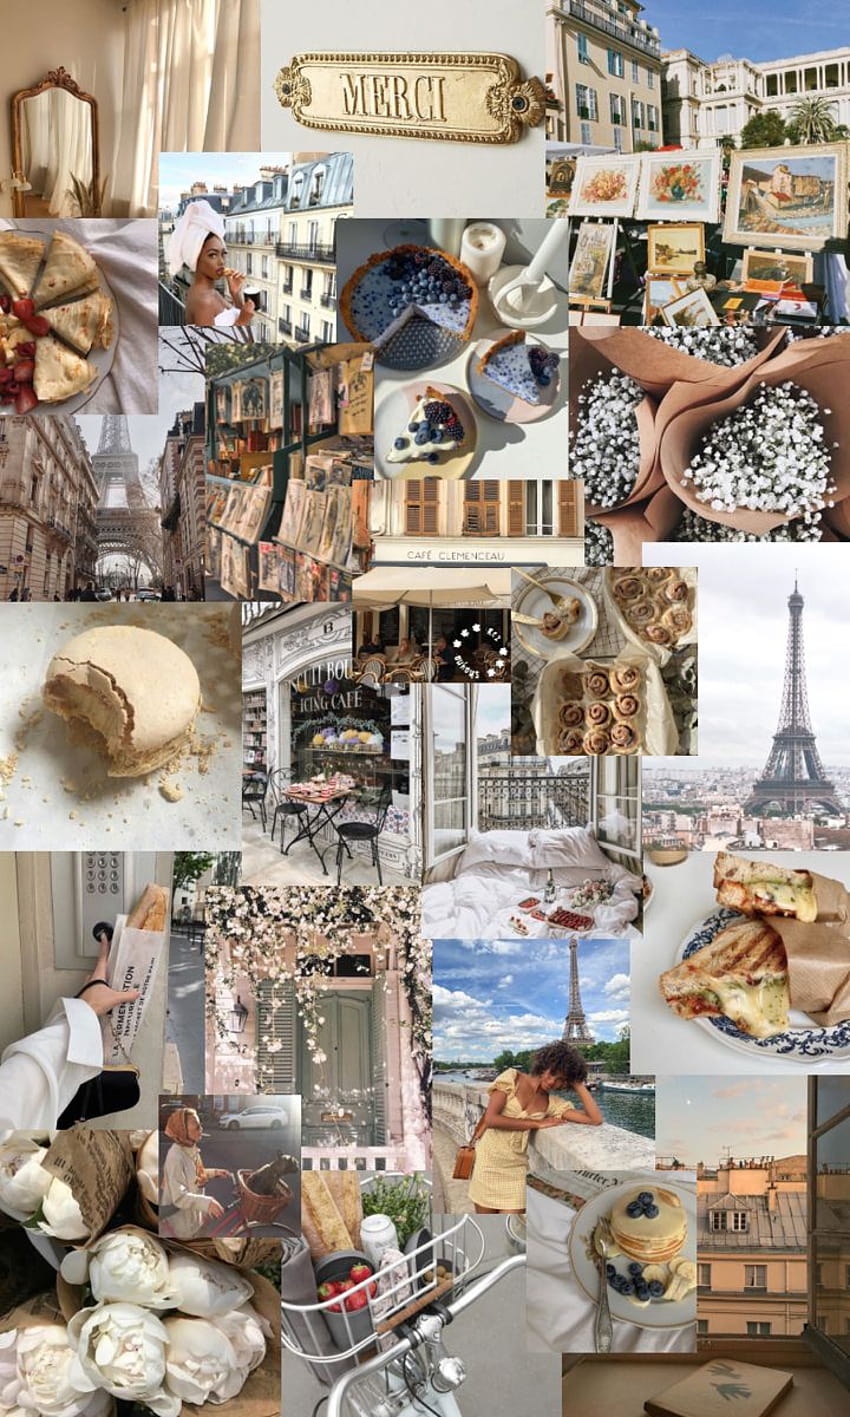 Paris collage sẽ đưa bạn đến với thành phố tình yêu lung linh và lãng mạn nhất thế giới. Những tấm ảnh sẽ khiến bạn như đang đứng trên đường phố Paris, ngắm nhìn những công trình kiến trúc nổi tiếng và tận hưởng không khí lãng mạn của thành phố ánh sáng.